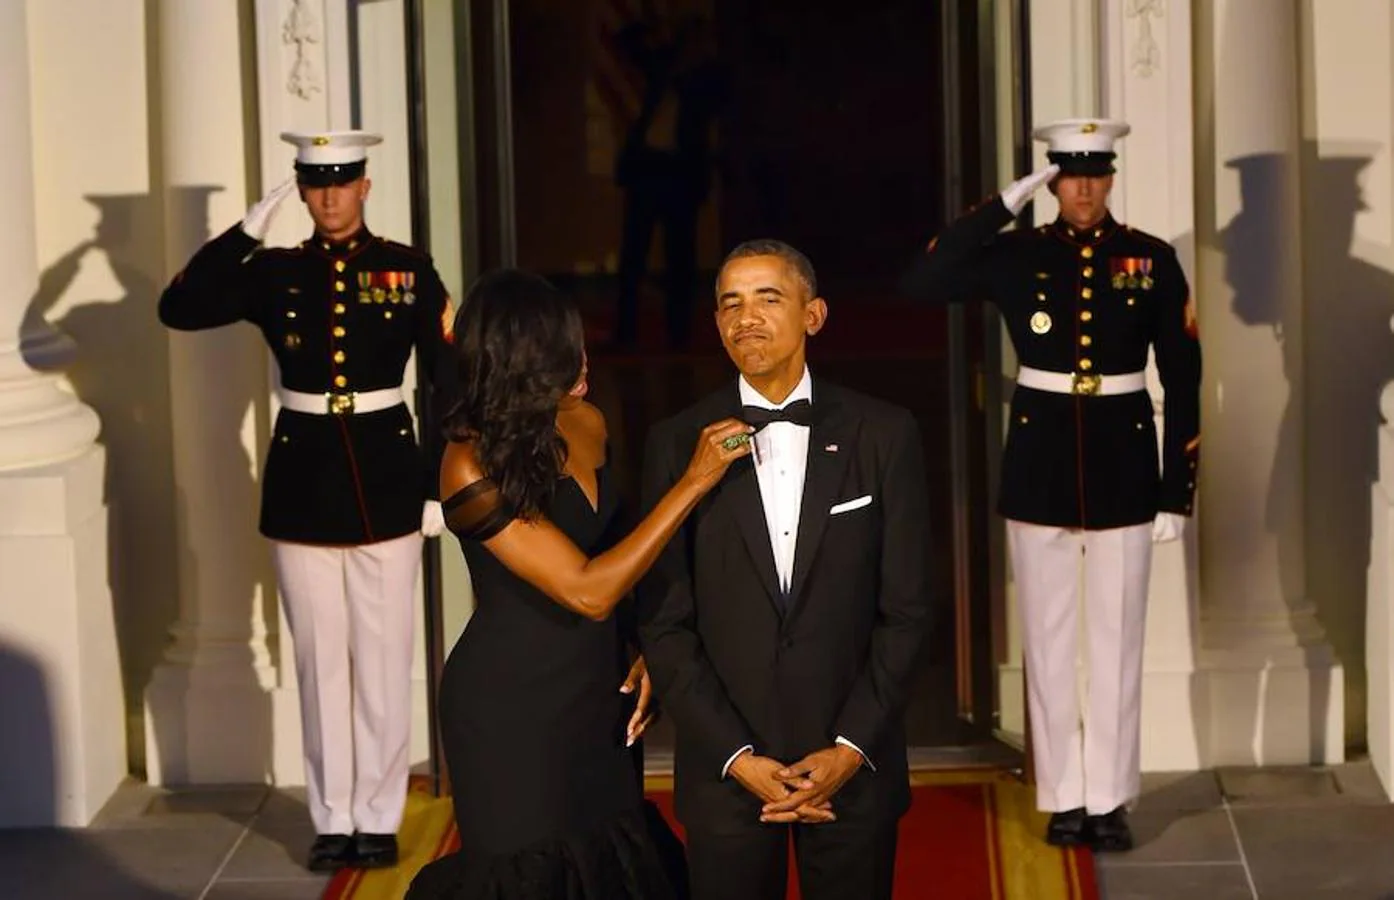 En repetidas ocasiones, ante decenas de miles de personas, han compartido miradas afectuosas o gestos, como cuando Michelle cuidaba a la perfeccón la imagen de su marido antes de los actos oficiales. 